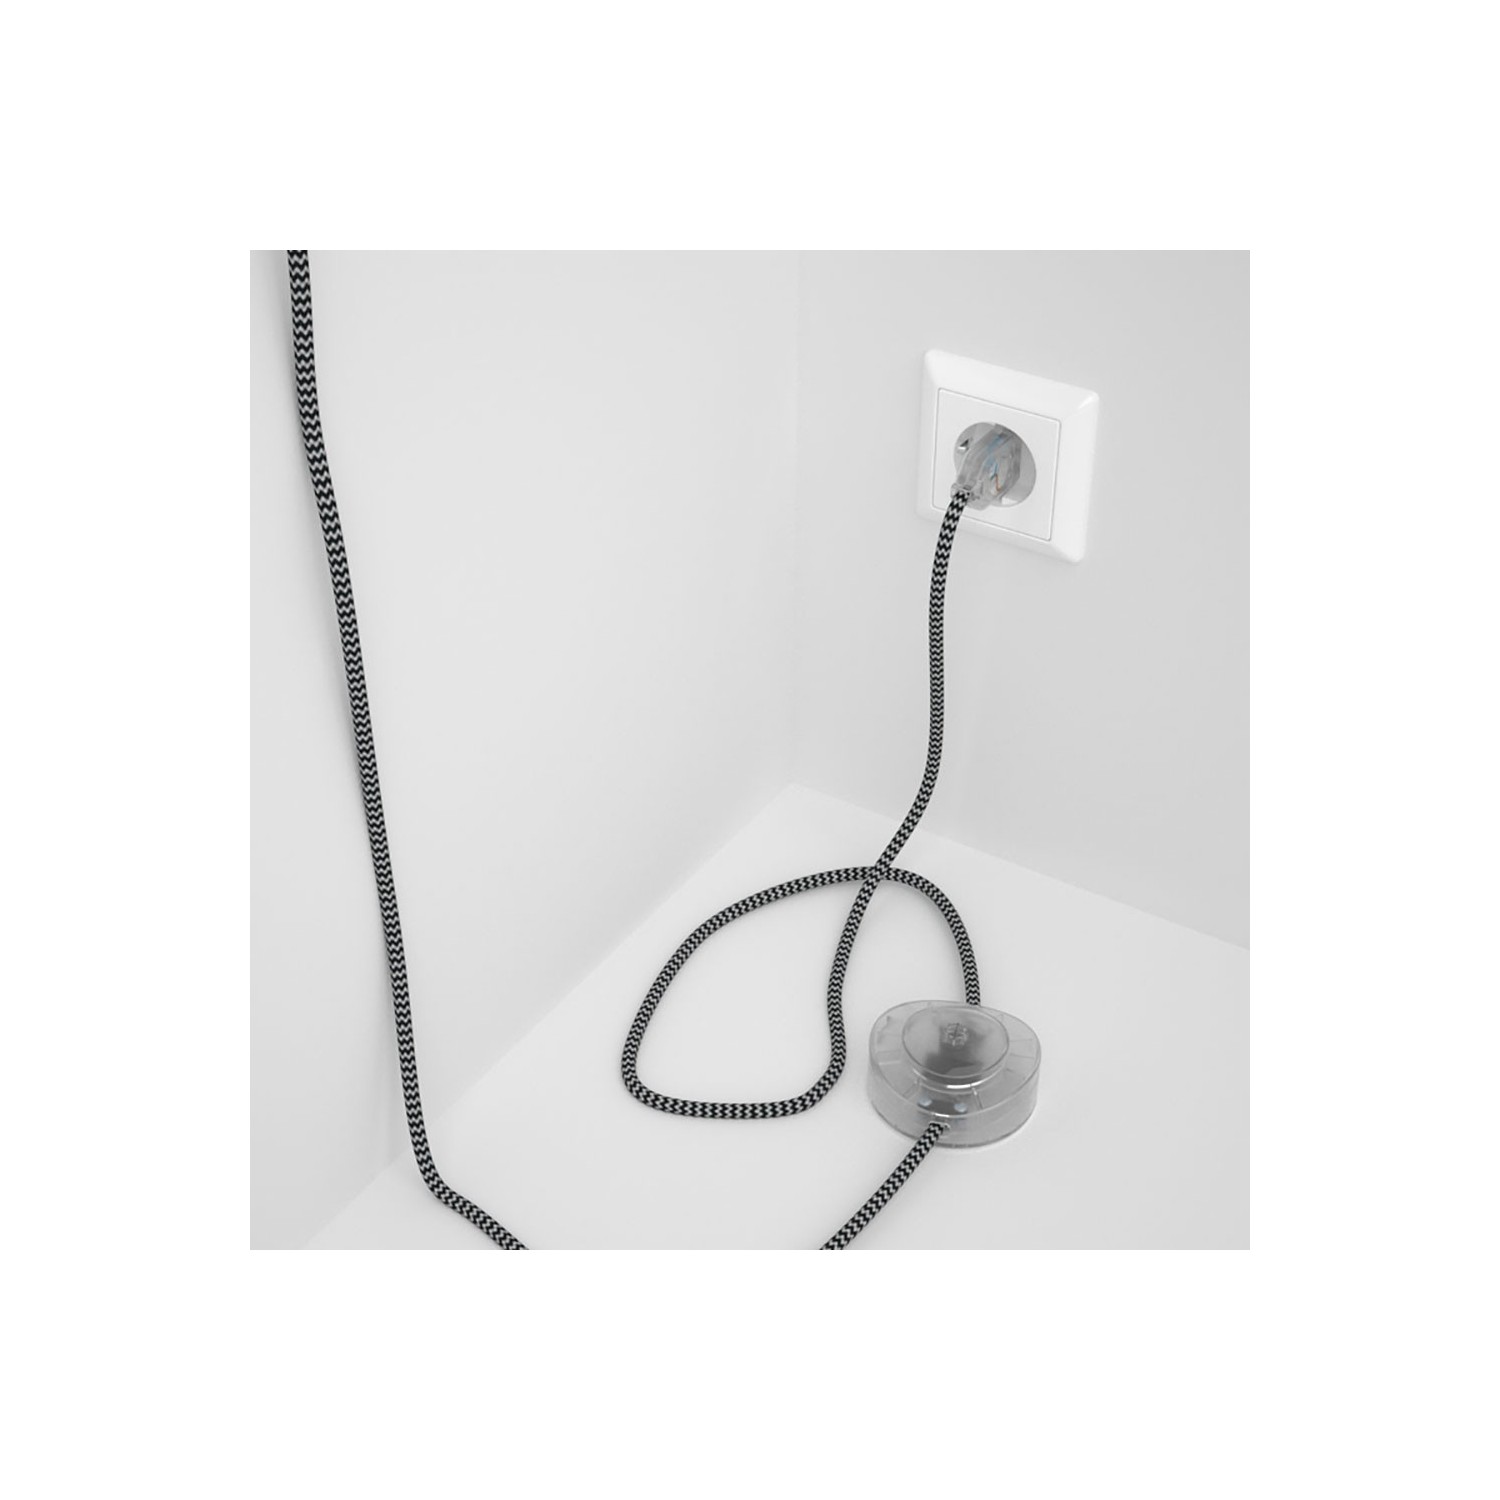 Cordon pour lampadaire, câble RZ04 Effet Soie ZigZag Blanc-Noir 3 m. Choisissez la couleur de la fiche et de l'interrupteur!